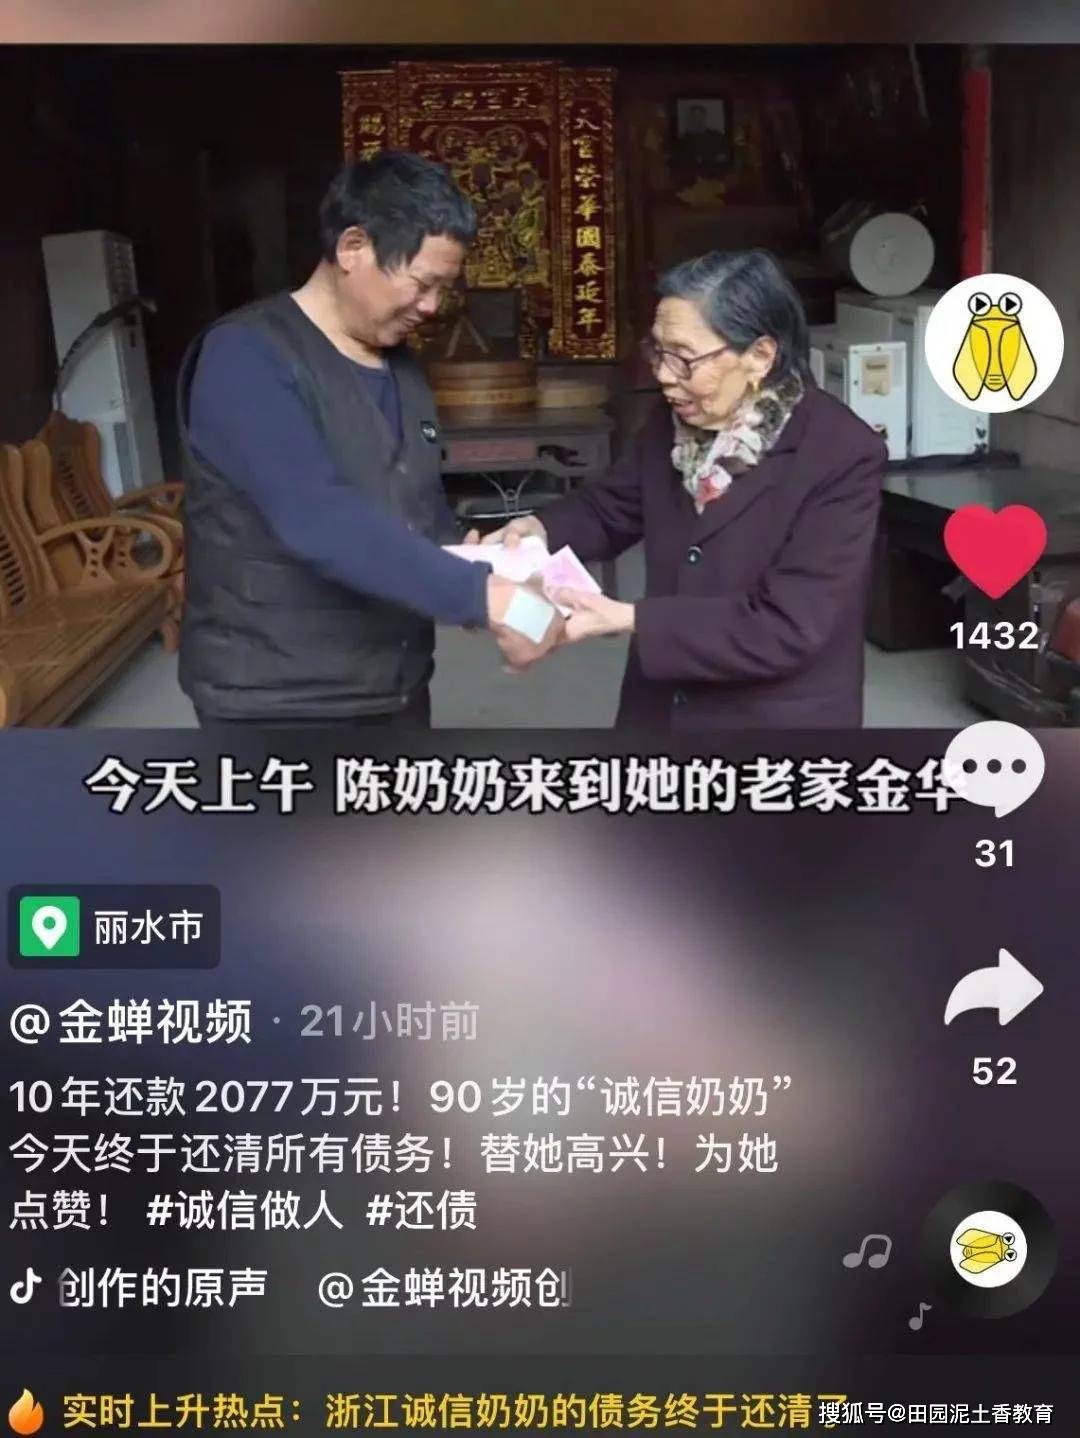 丽水90岁奶奶陈金英讲述10年还账2077万历程:网友称教科书级的诚信!